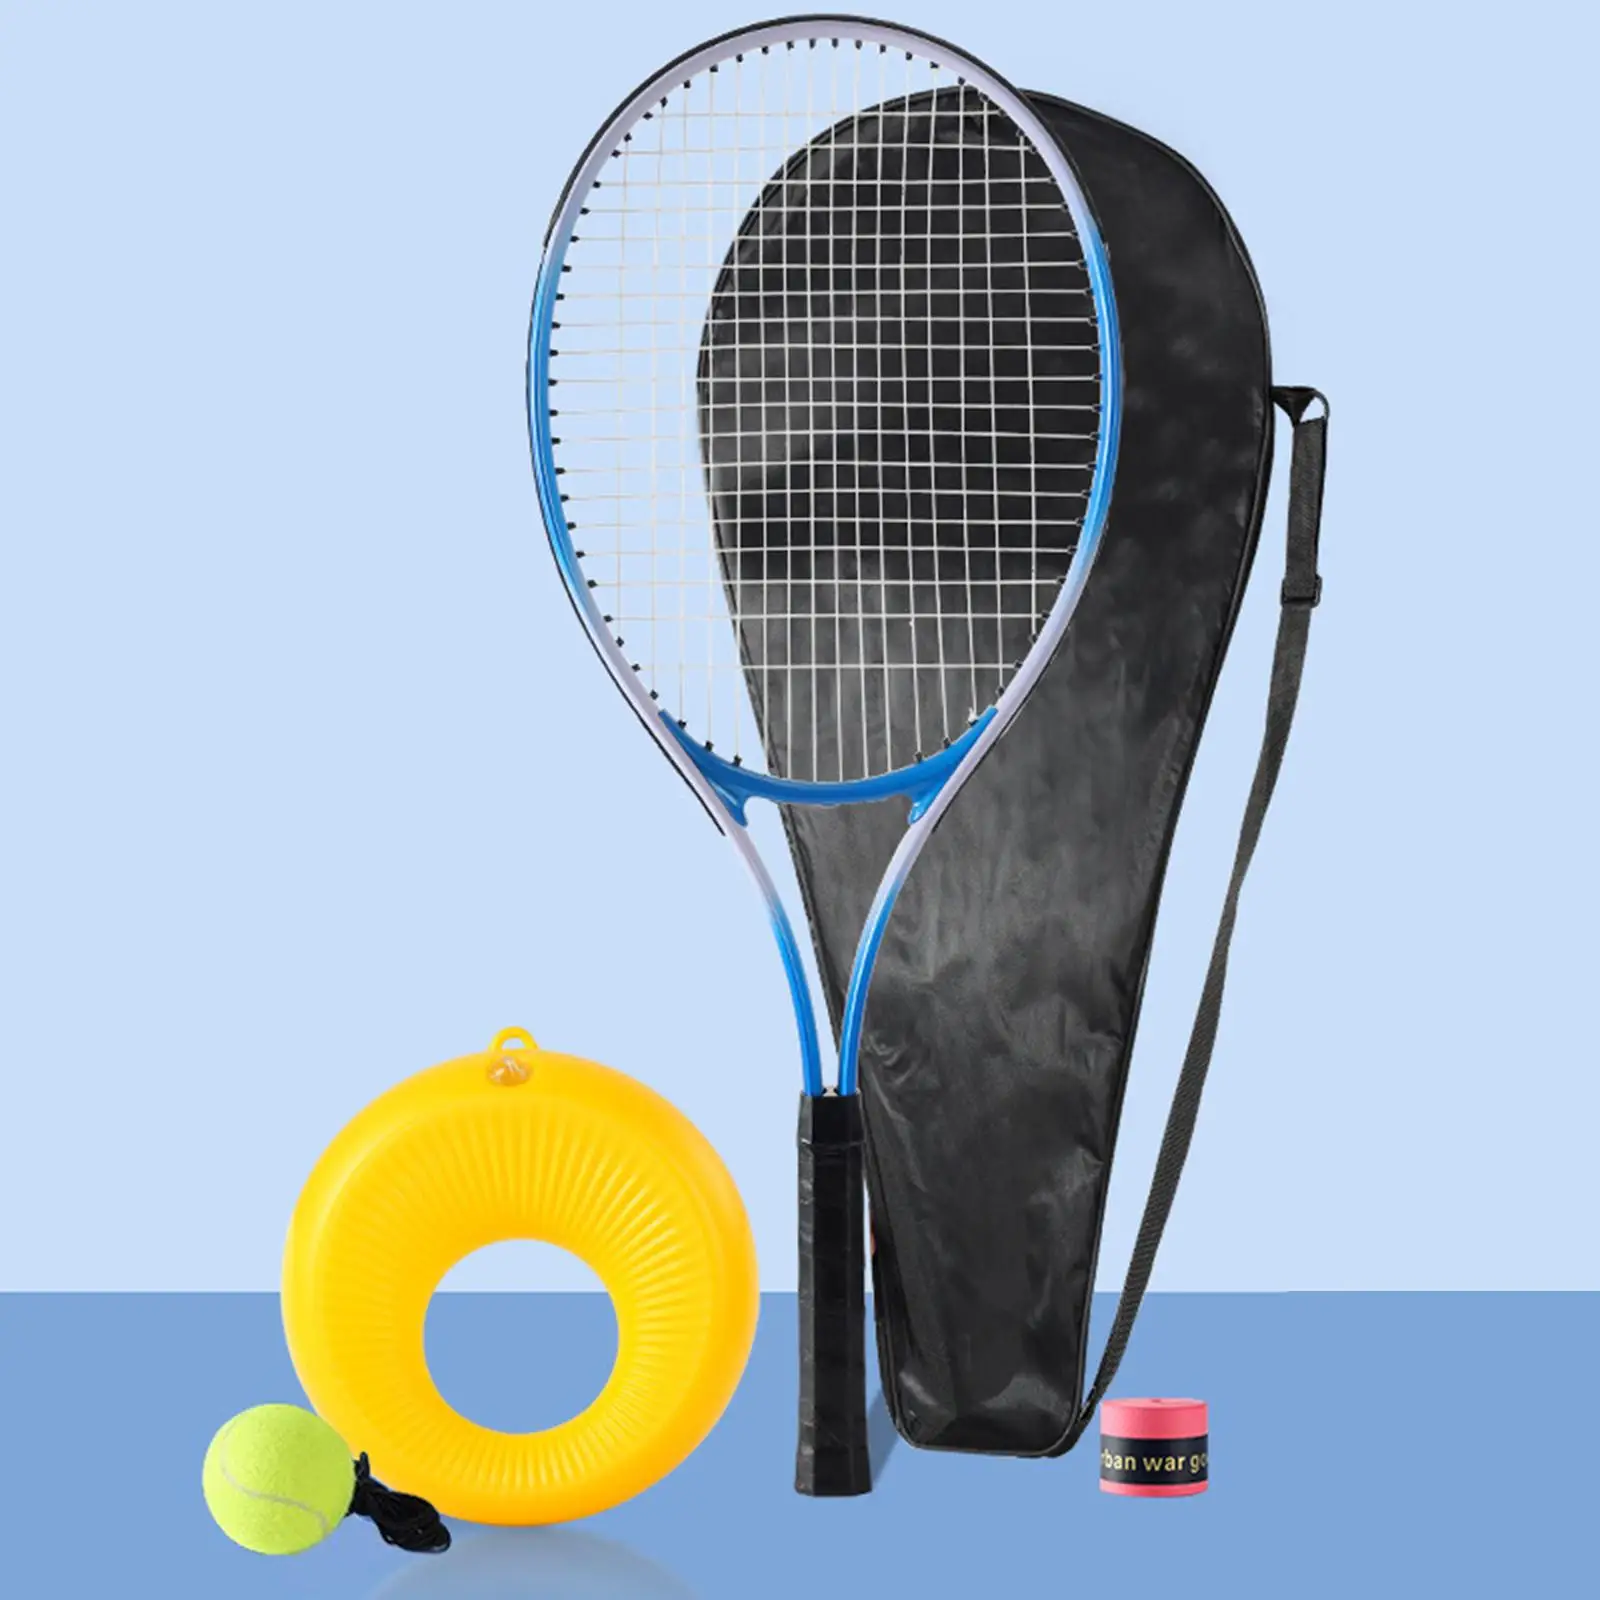 Solo Training Tennis Training Tennis Racket Tool Equipment Tennis Return Set